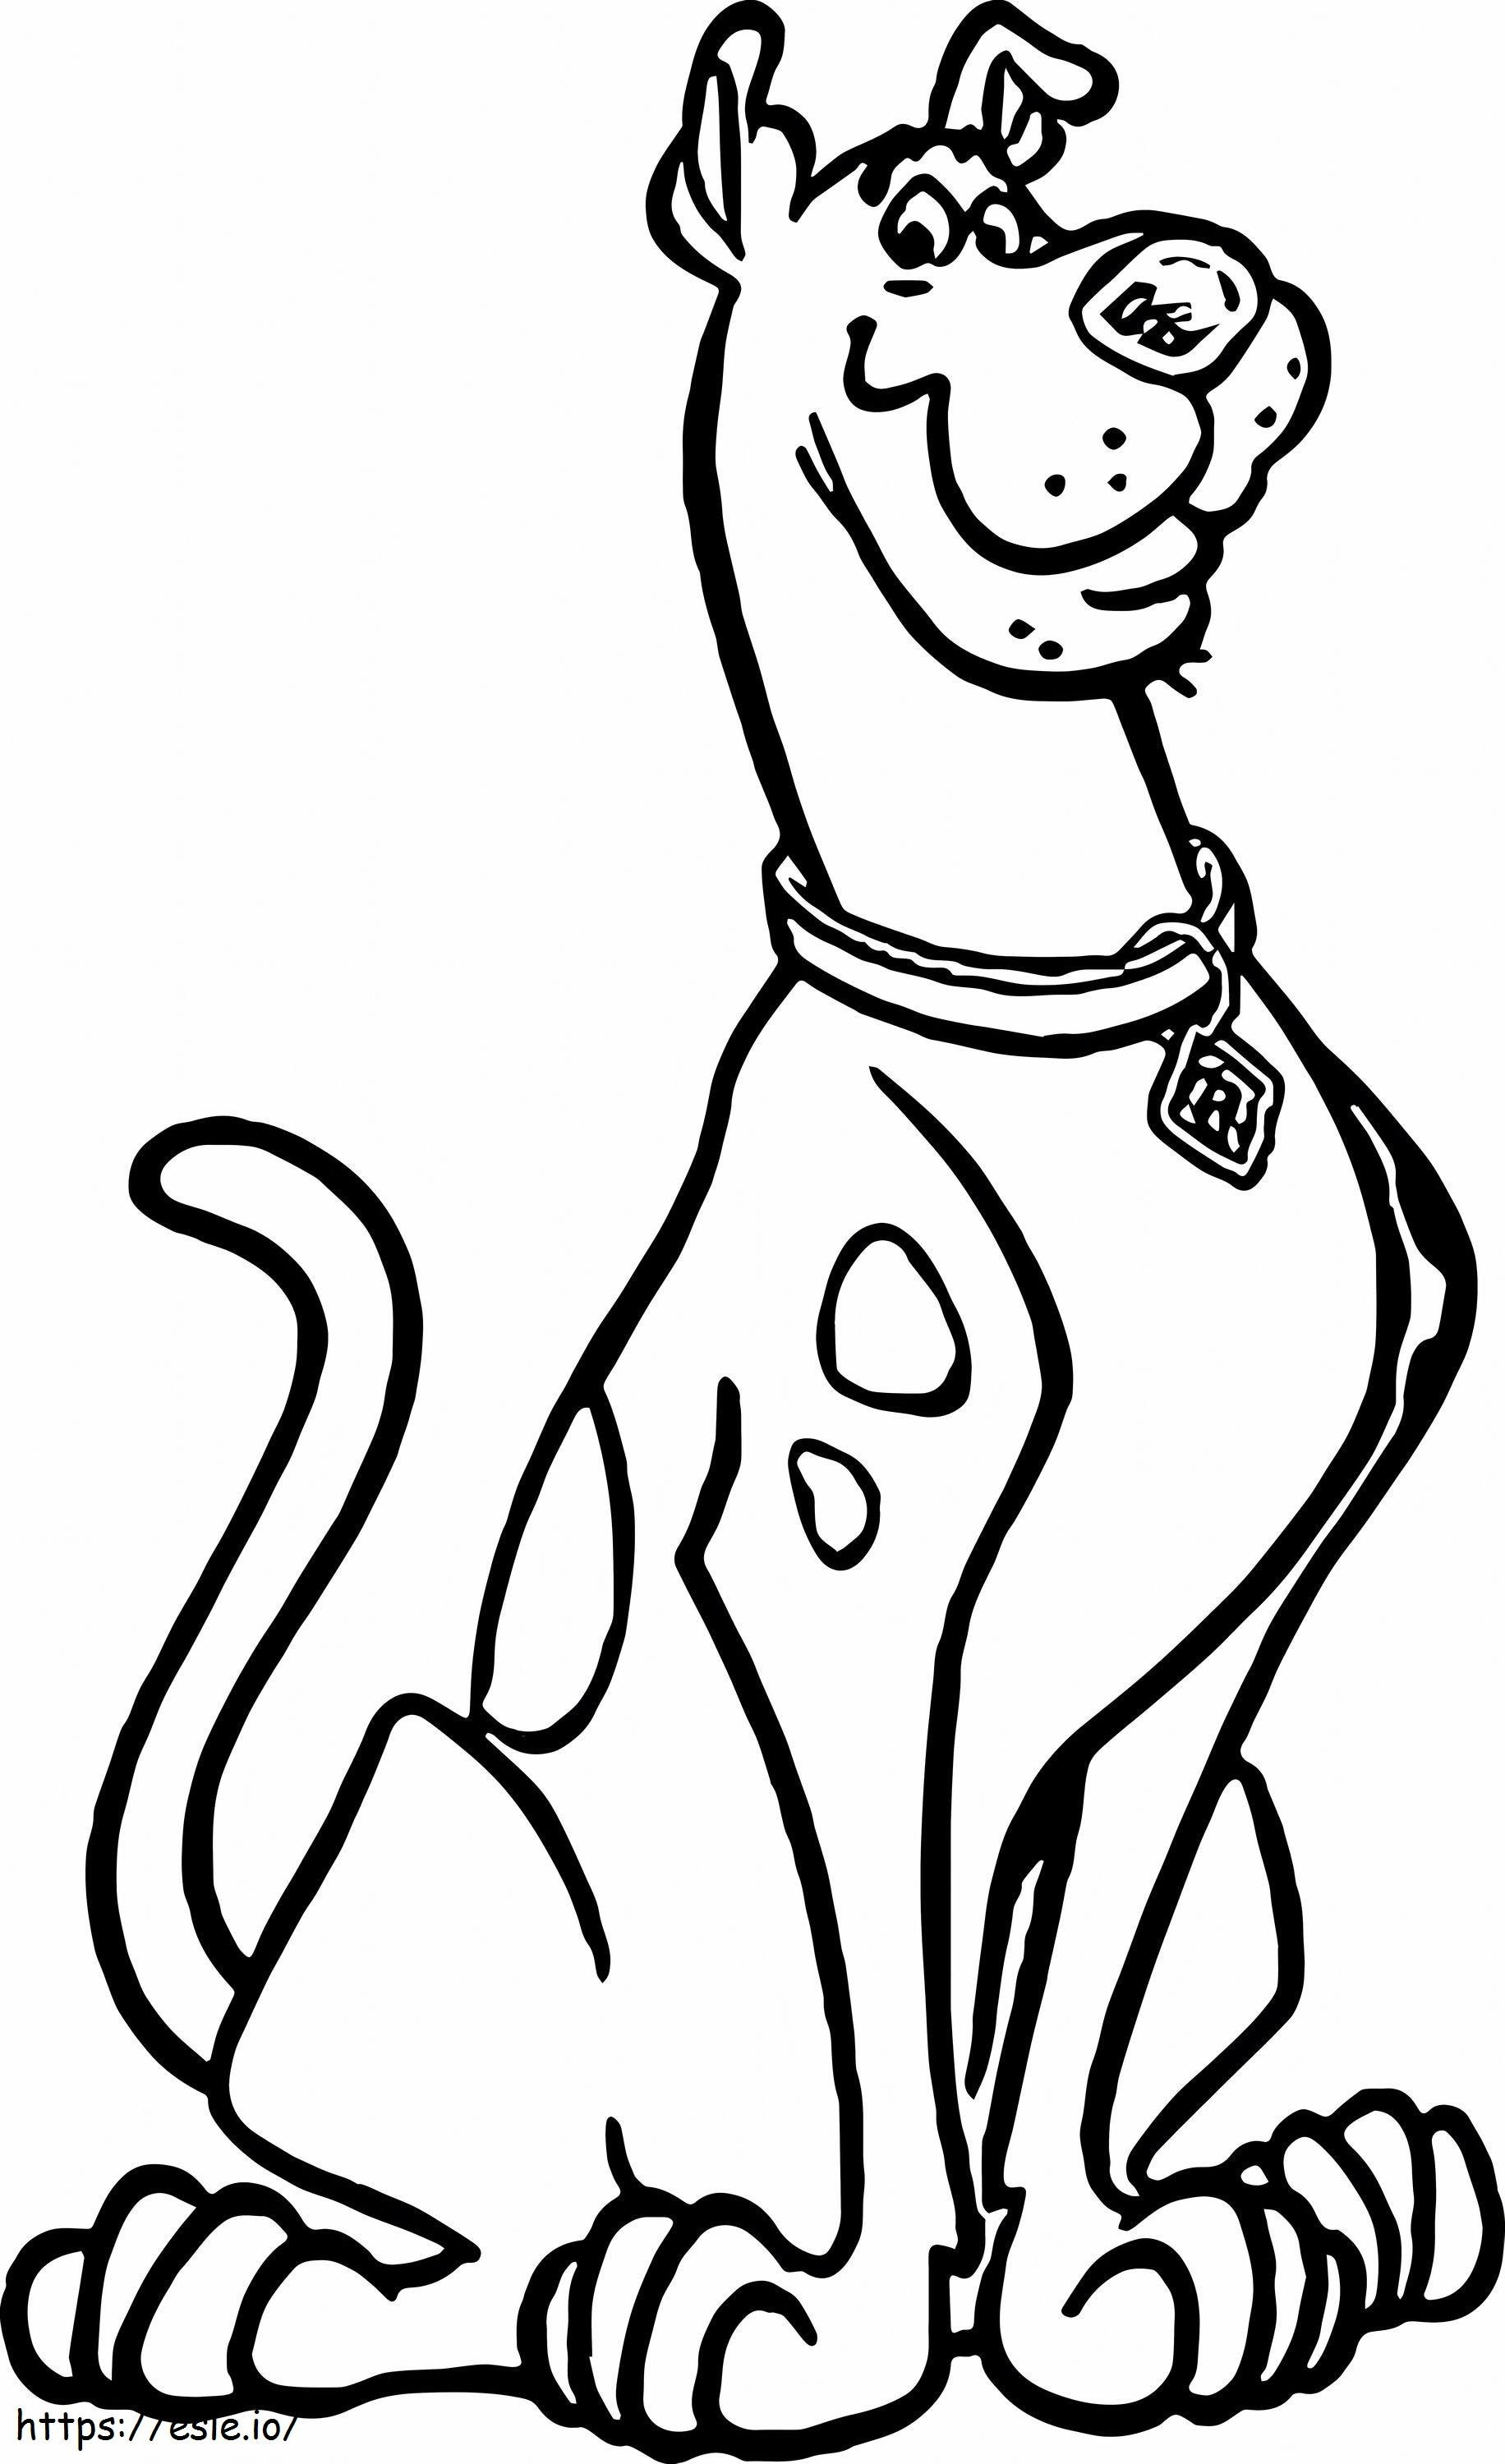  Scooby Doo Ausmalbilder zum Ausdrucken Frische Scooby Doo Scoo Doo Cartoon-Zeichnung Hund Scoo Doo von Scooby Doo Ausmalbilder zum Ausdrucken im Maßstab 2 ausmalbilder